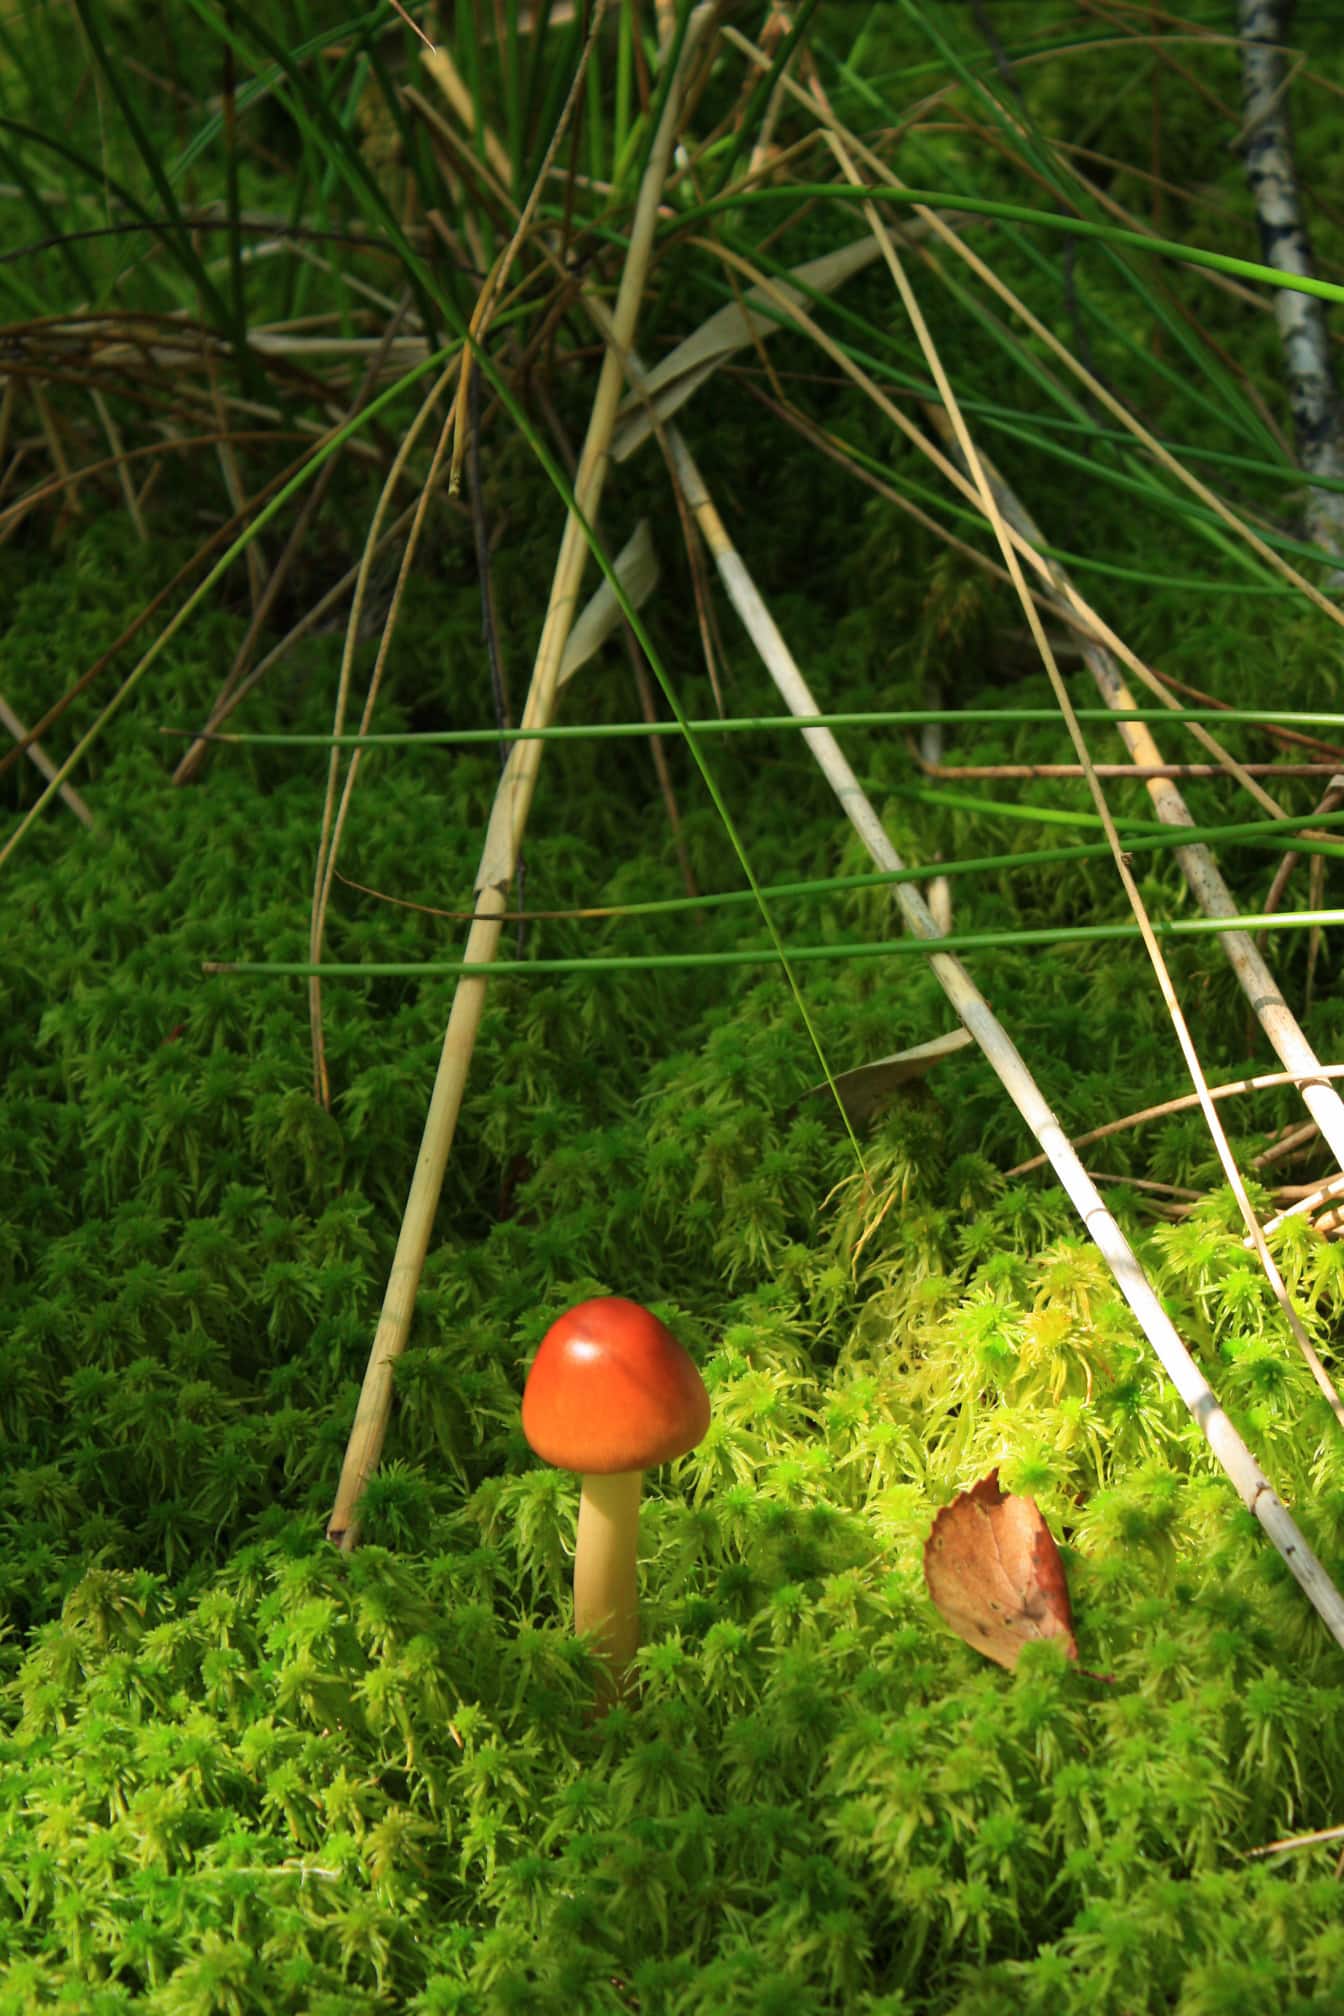 Américain mince César champignon (Amanita jacksonii) dans les plantes d’herbe en gros plan